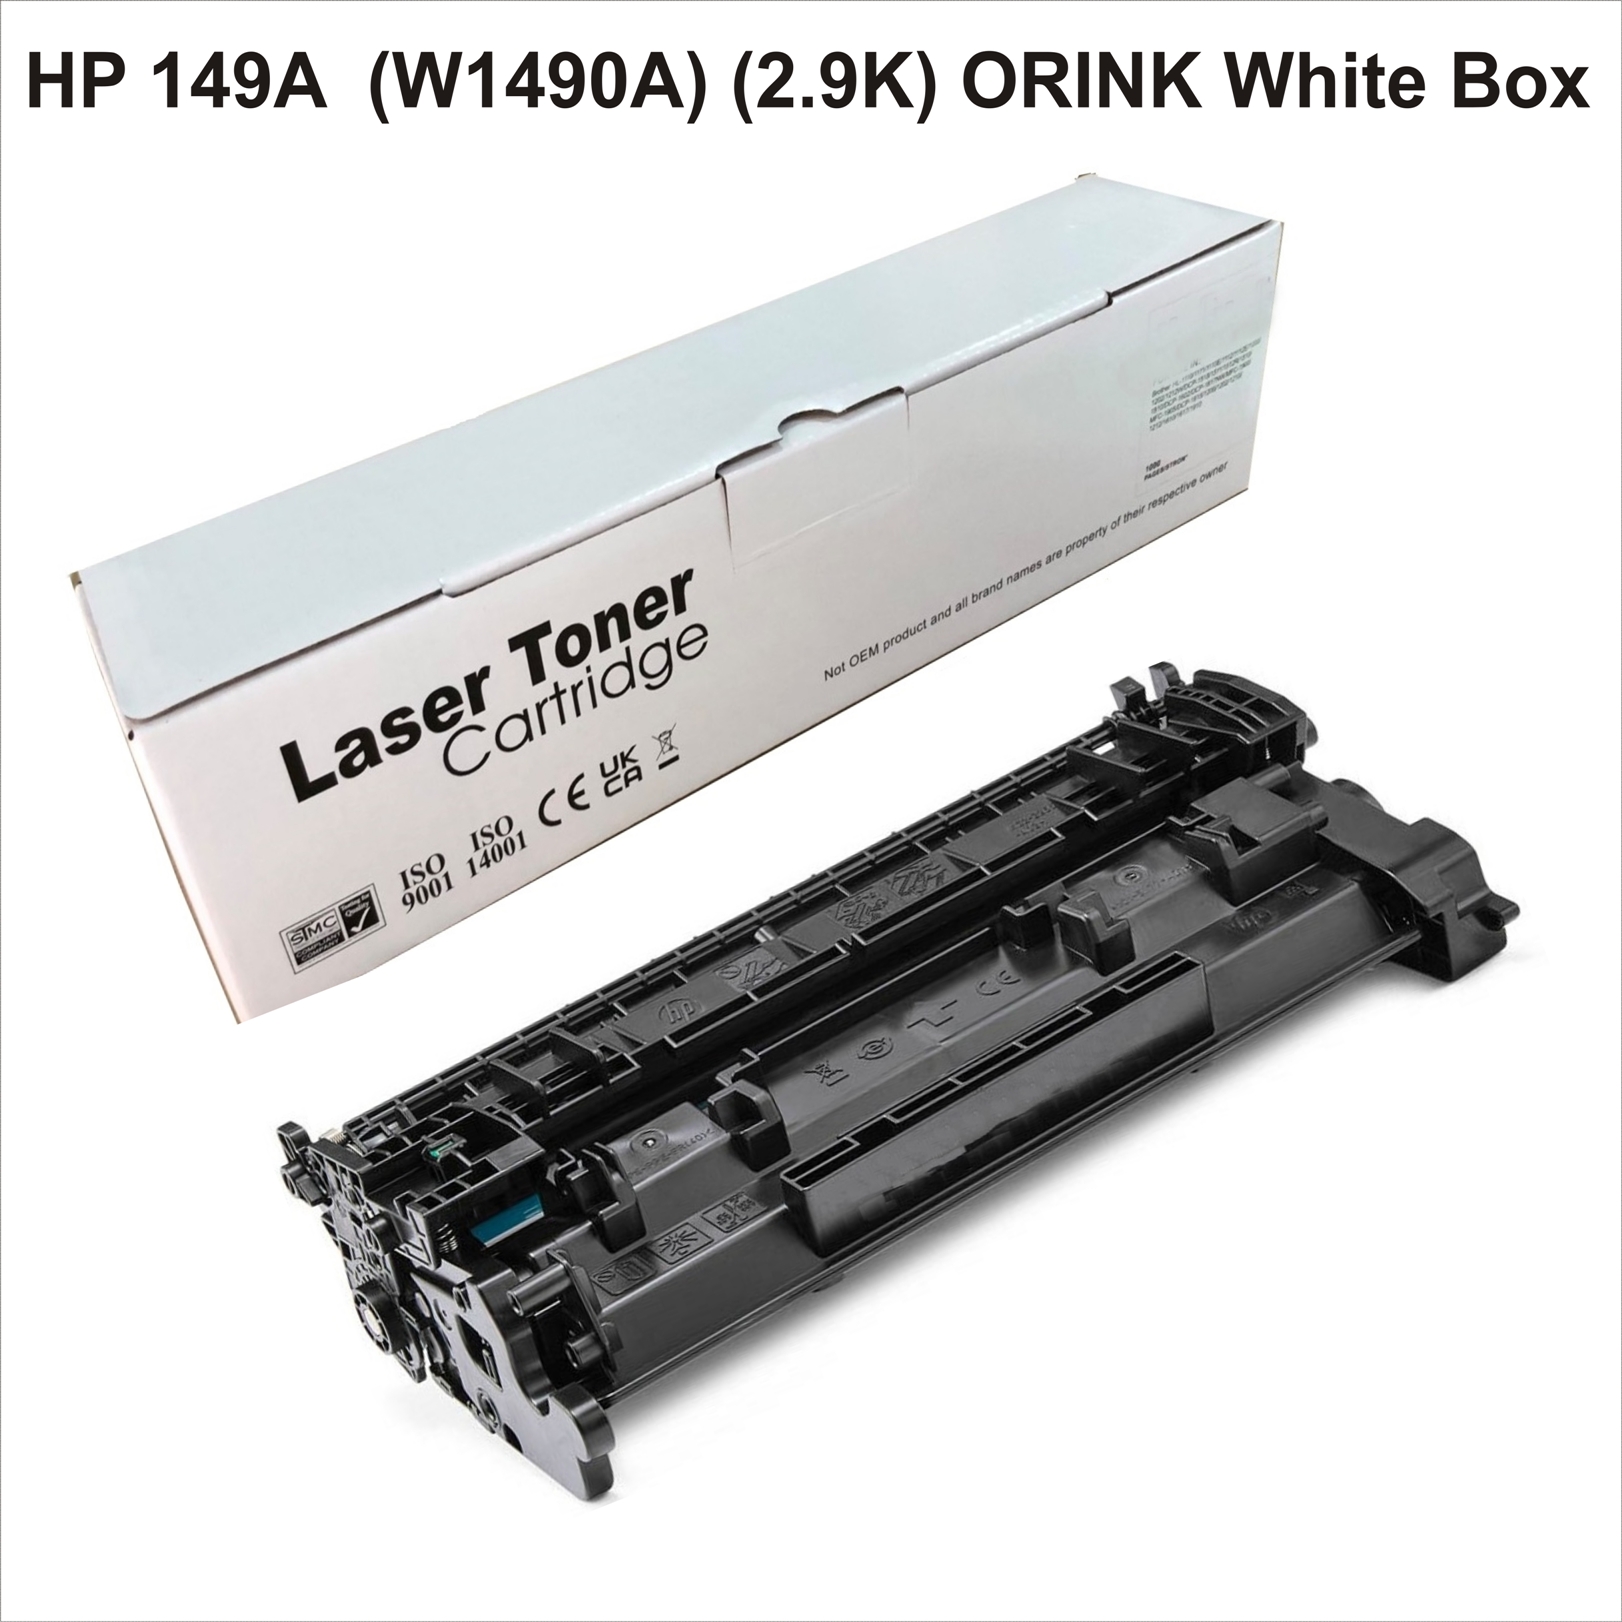 HP 149A  (W1490A) (2.9K) ORINK White Box